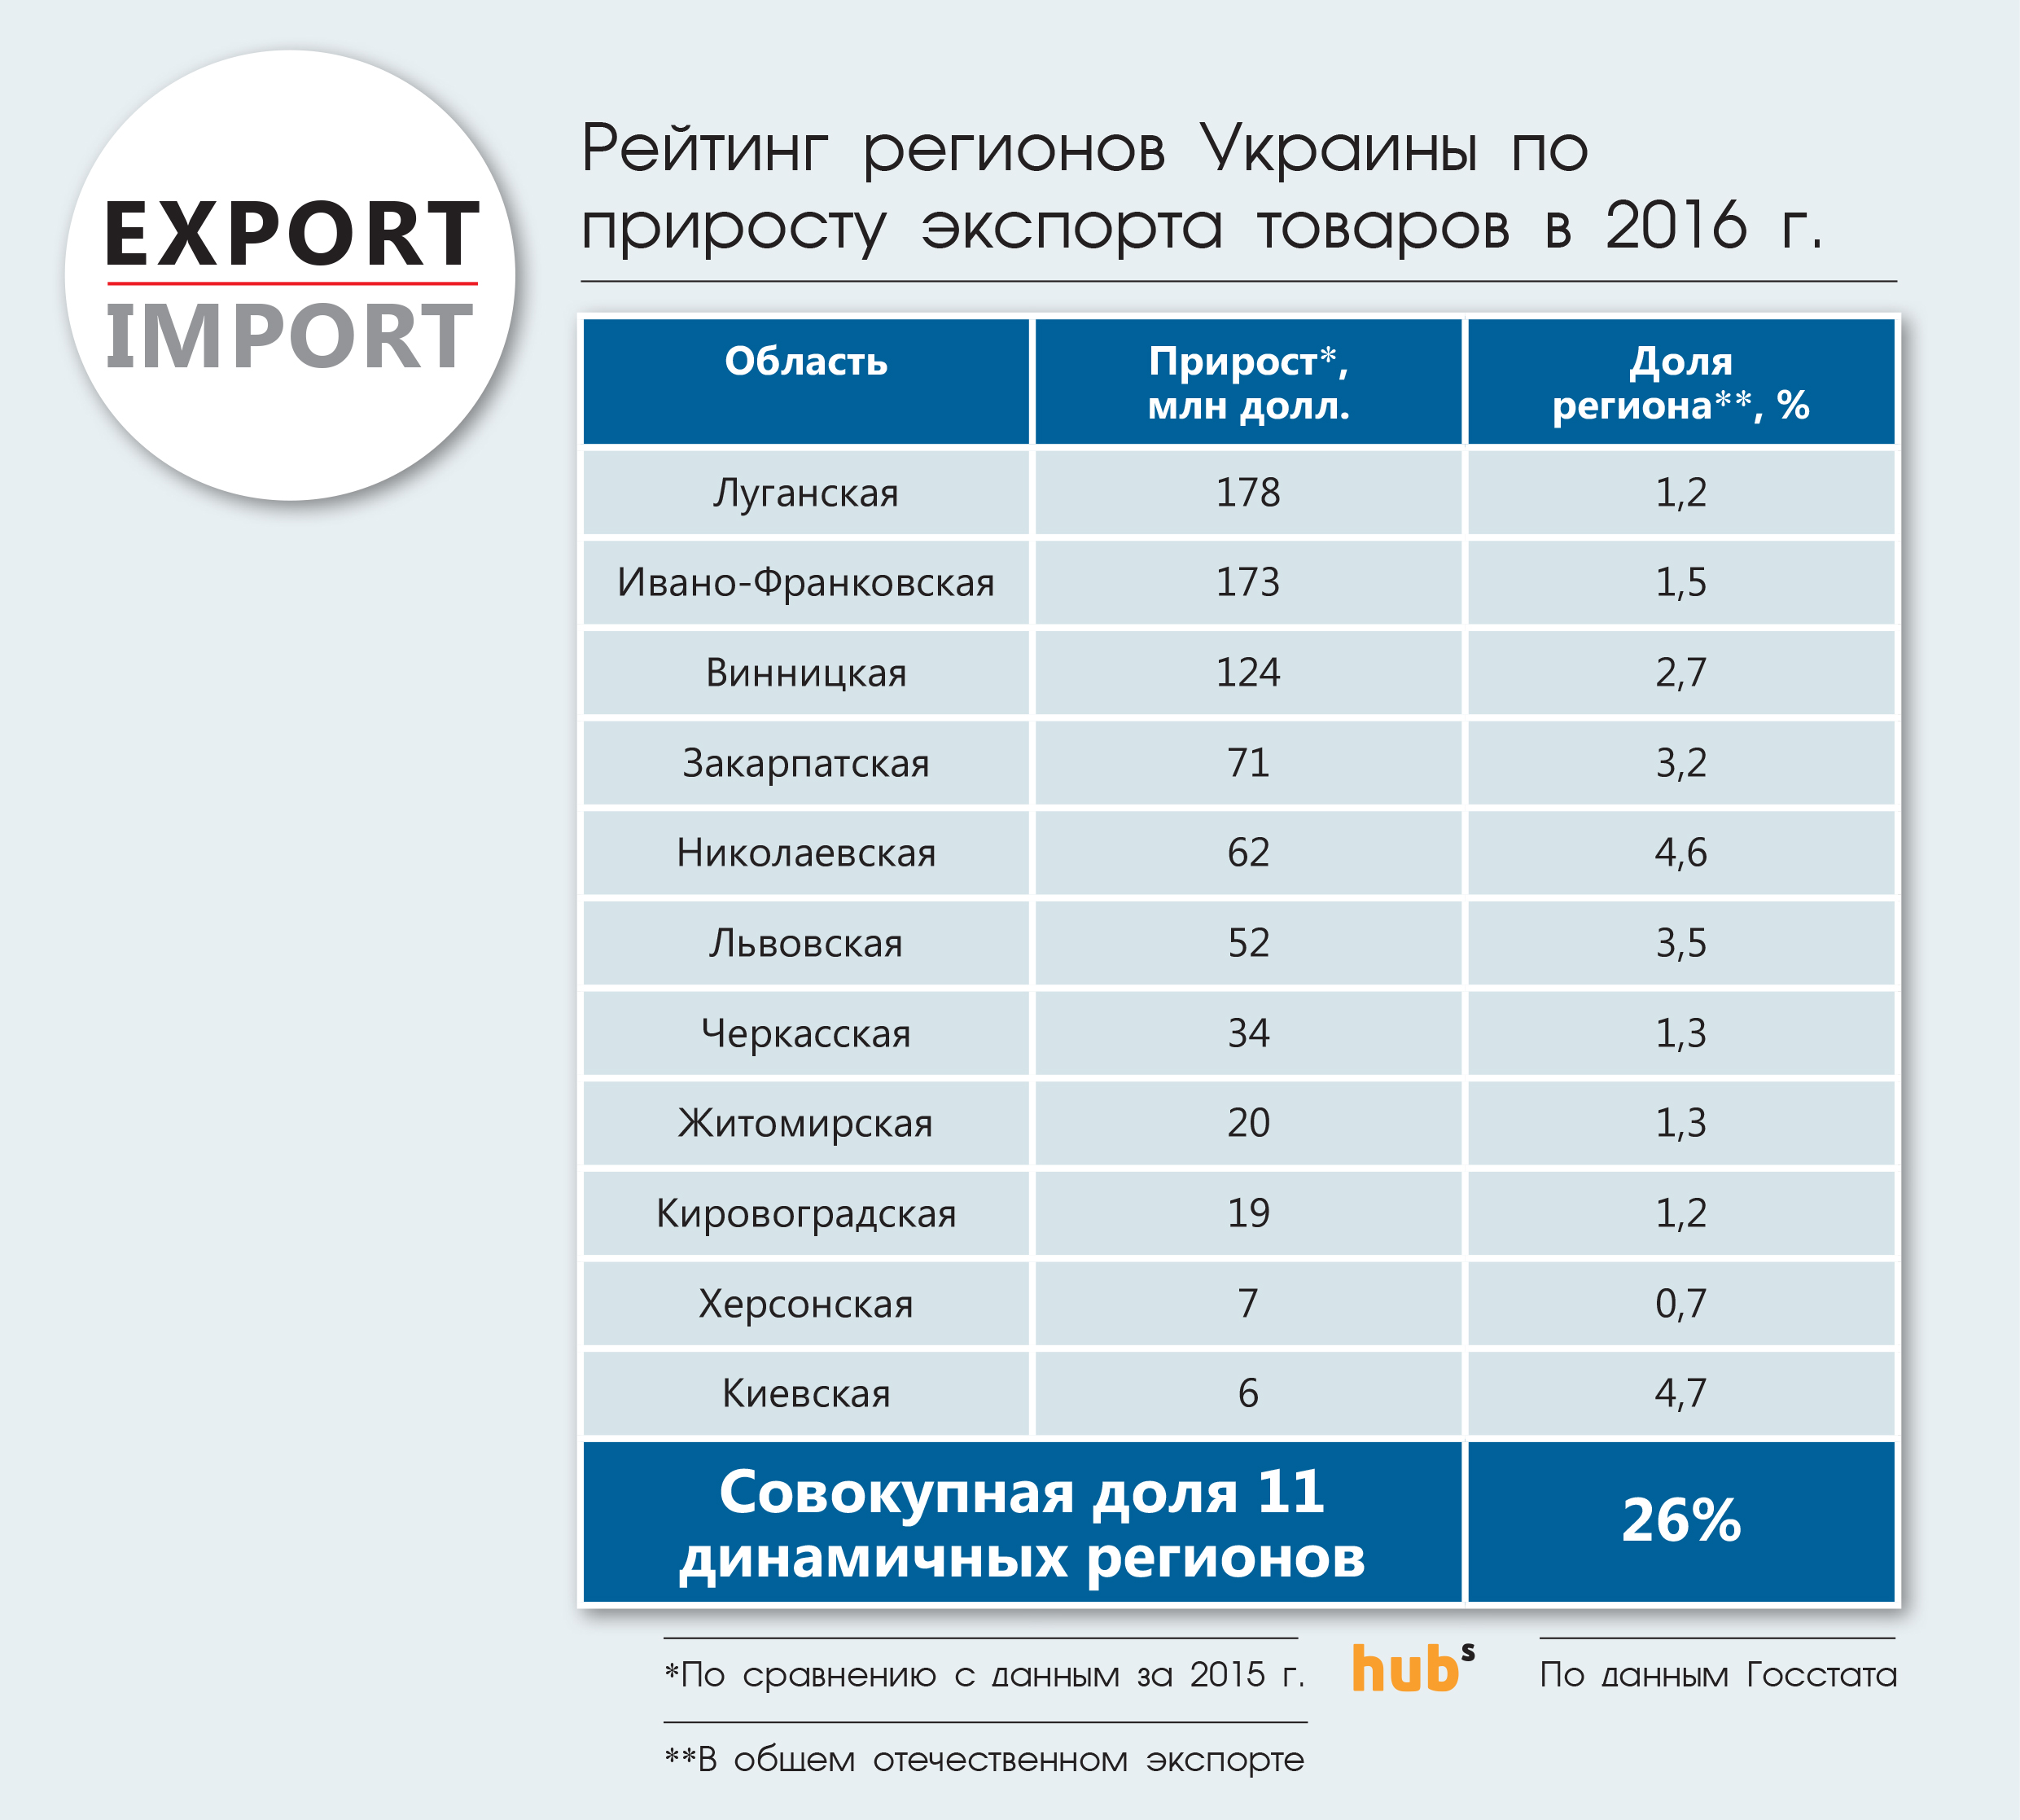 Рейтинг регионов Украины по приросту экспорта товаров в 2016 г